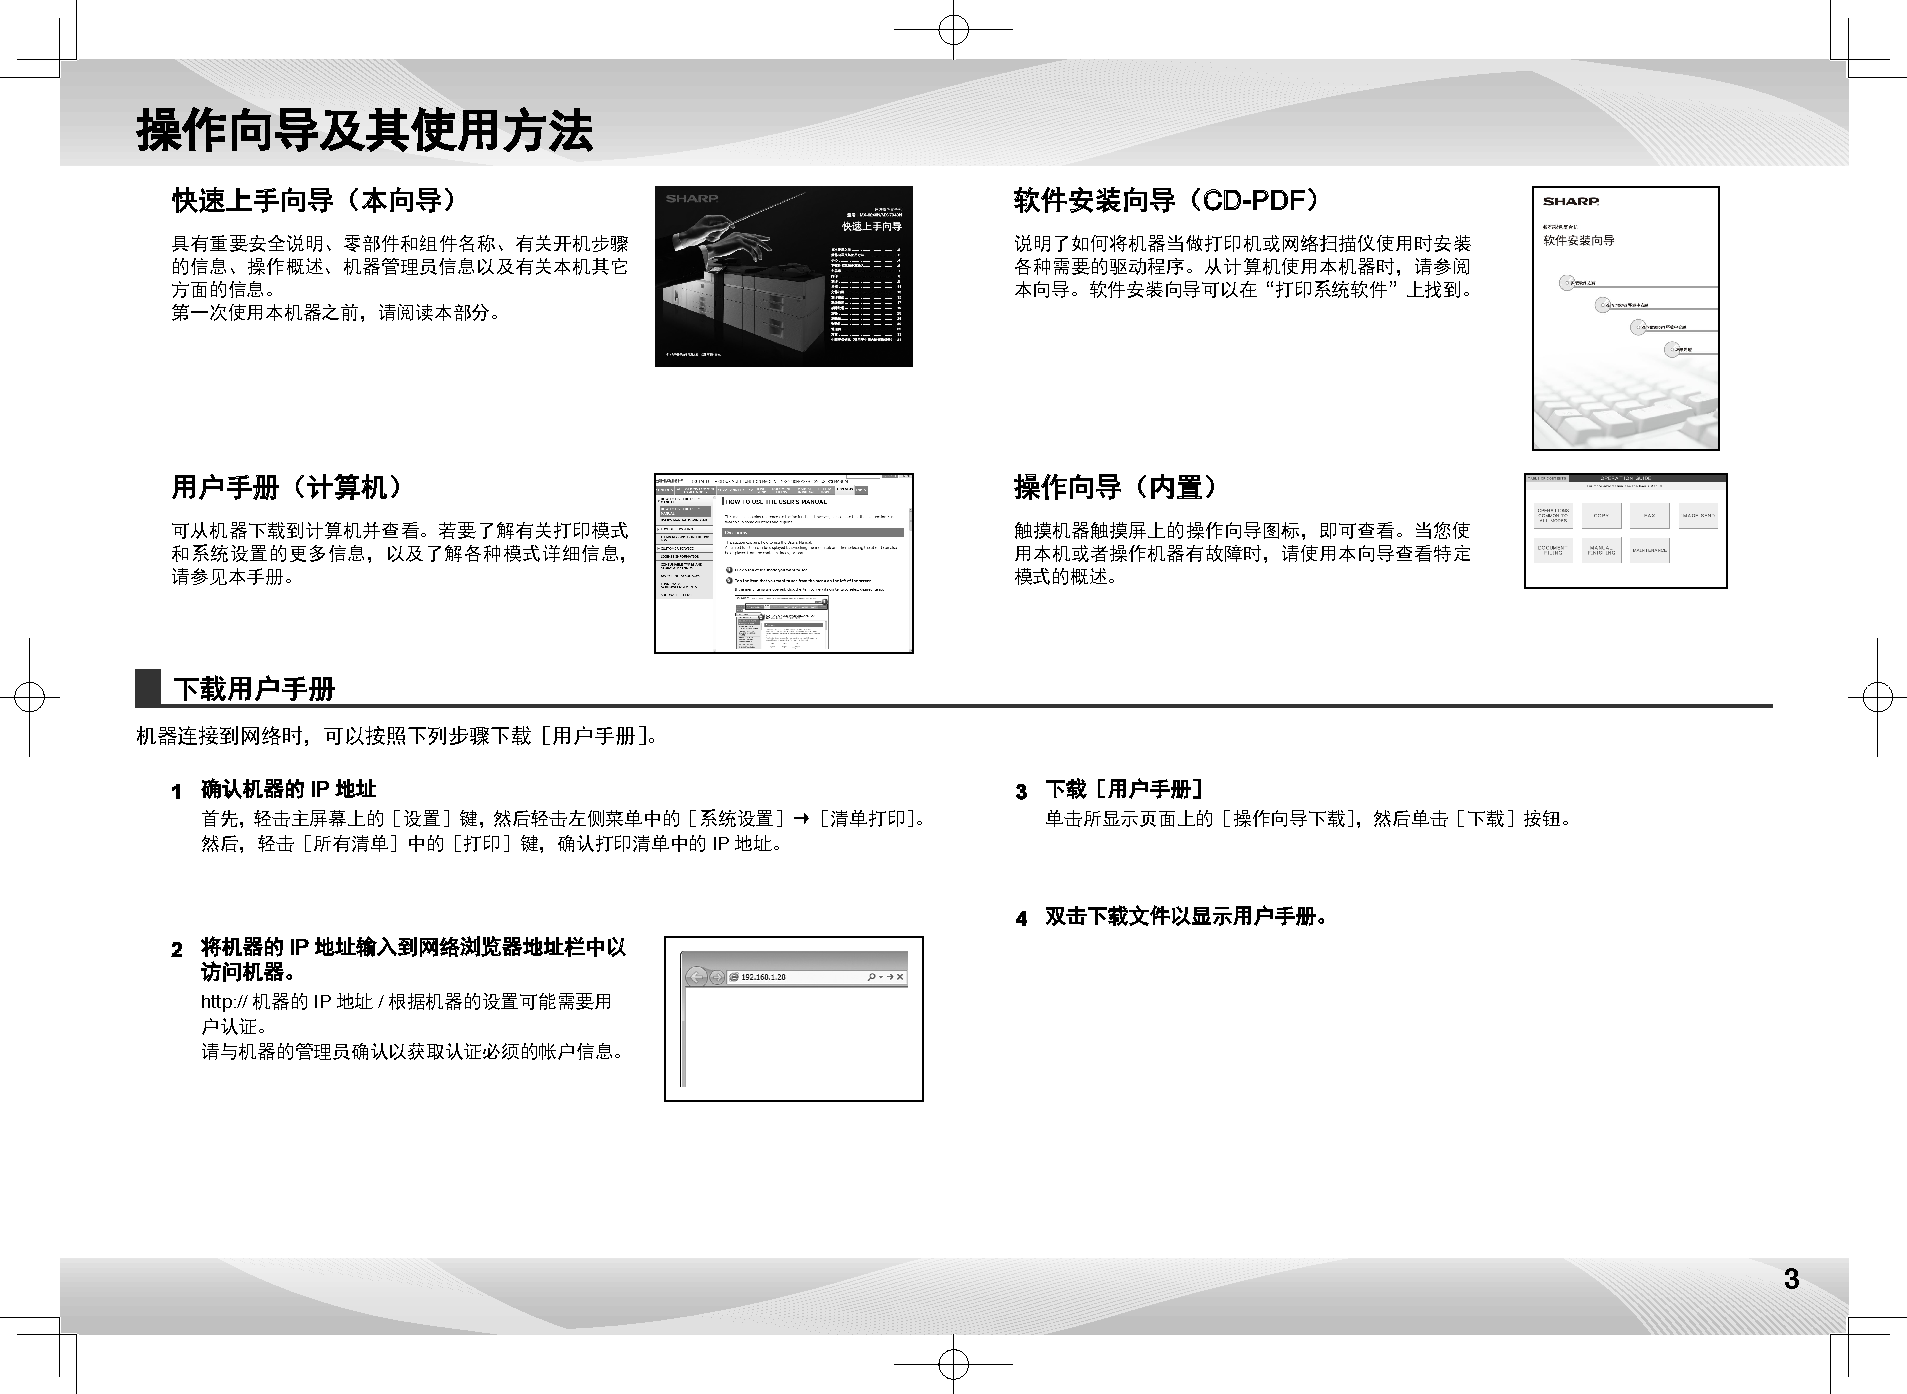 夏普 Sharp MX-6240N 入门 操作手册 第2页